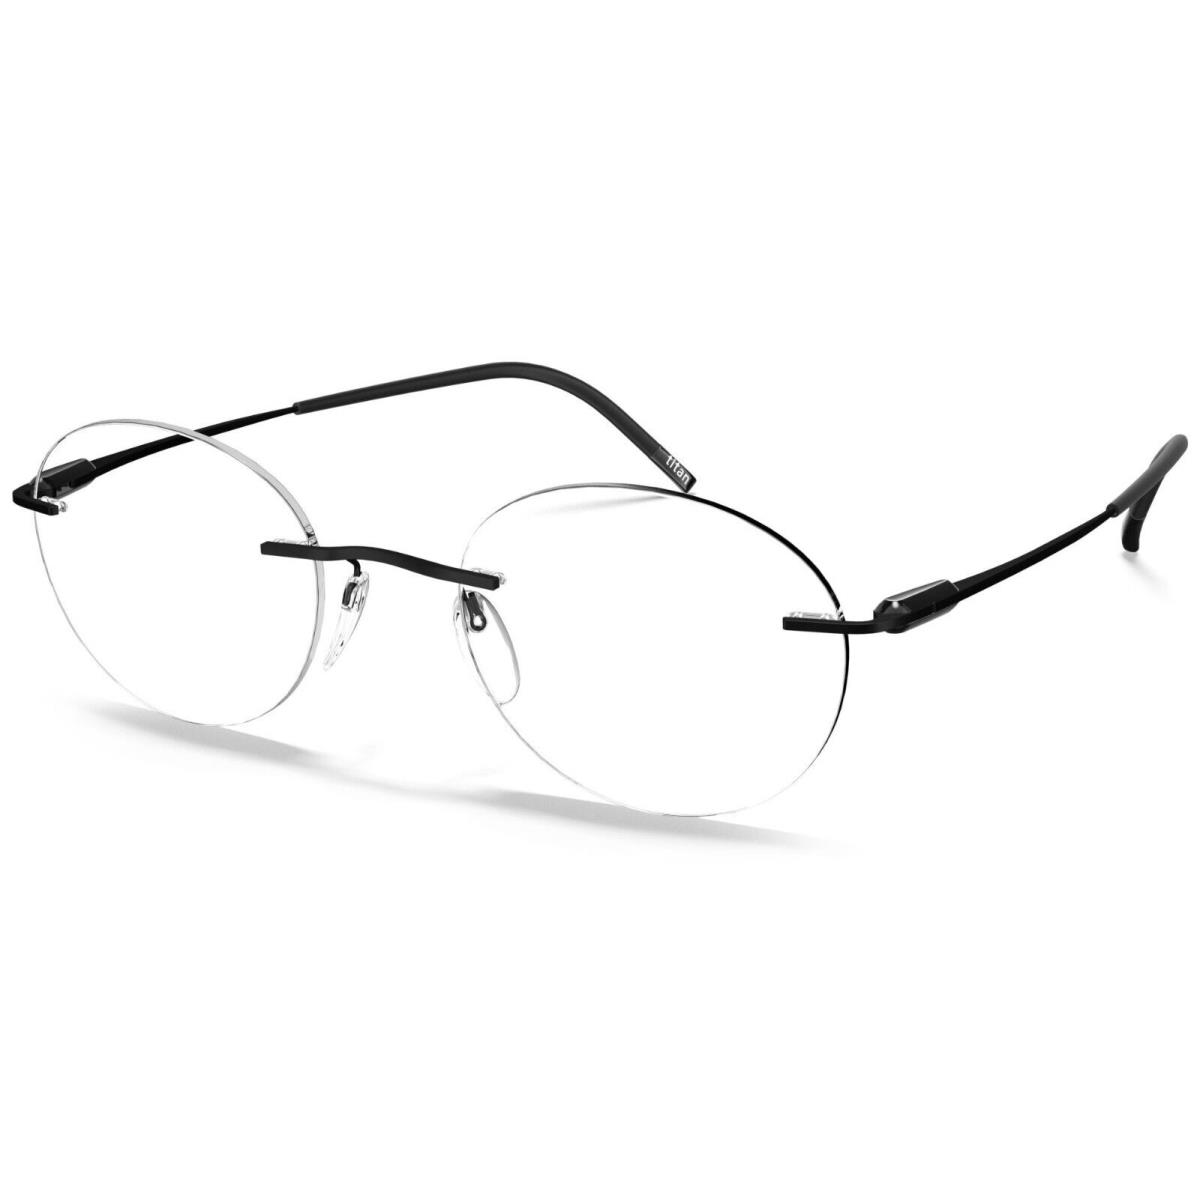 Silhouette Eyeglasses Purist Strong Black 49MM-21MM-150MM 5561-AJ-9040-49MM